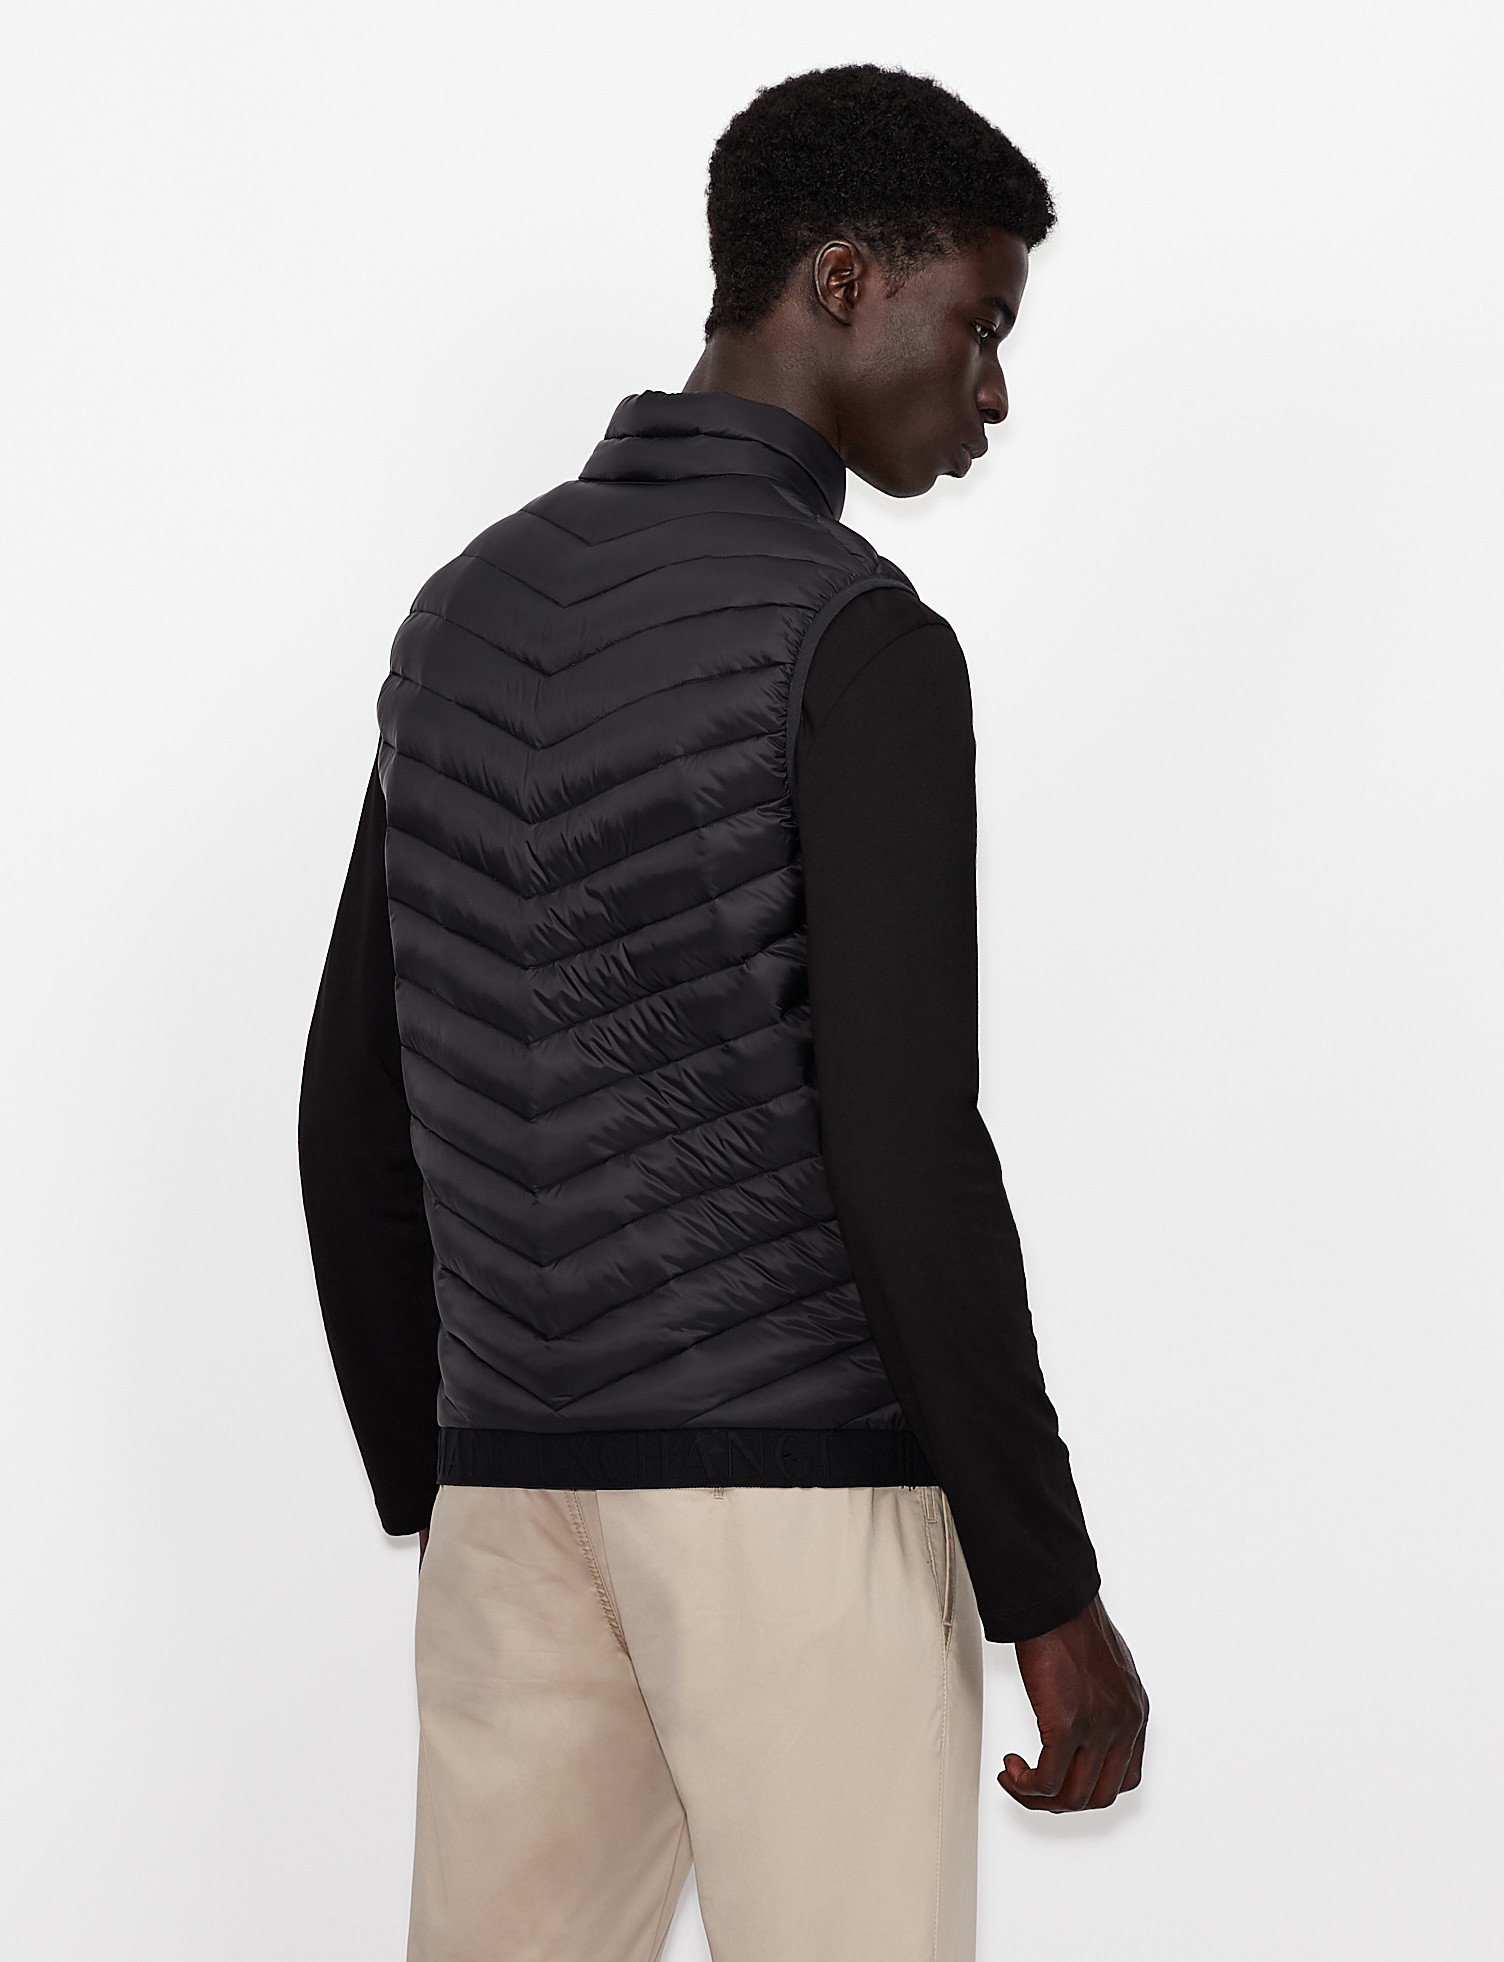 Armani Exchange - Padded sleeveless down jacket, Black, large image number 3